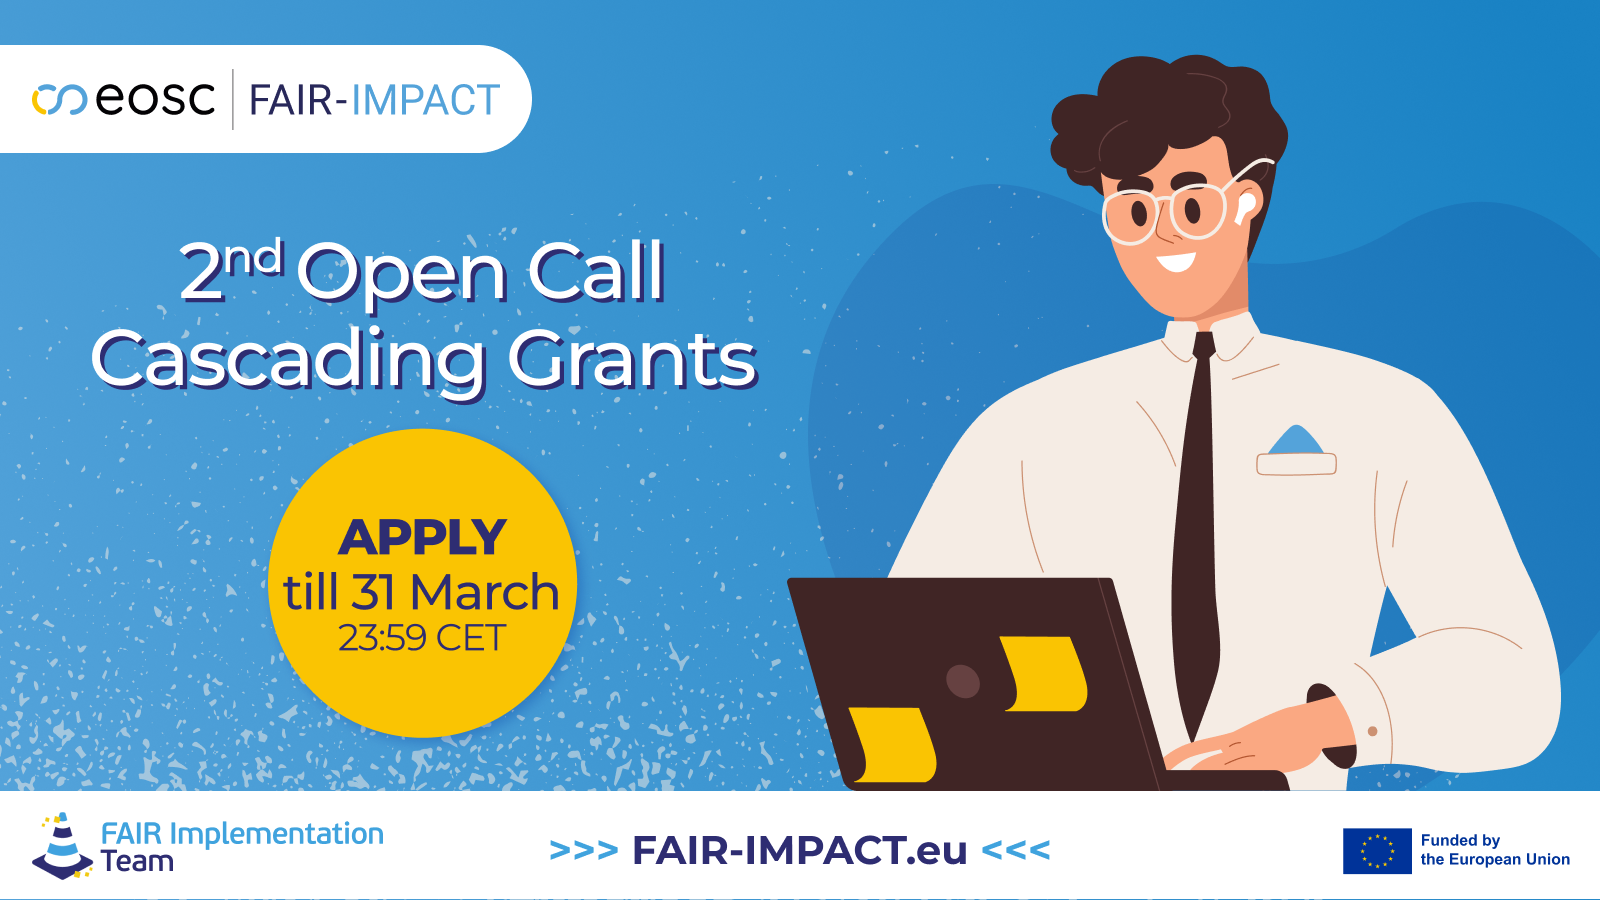 FAIR-IMPACT ogłosiło drugi Open Call na wsparcie finansowe w ramach Cascading Grants!